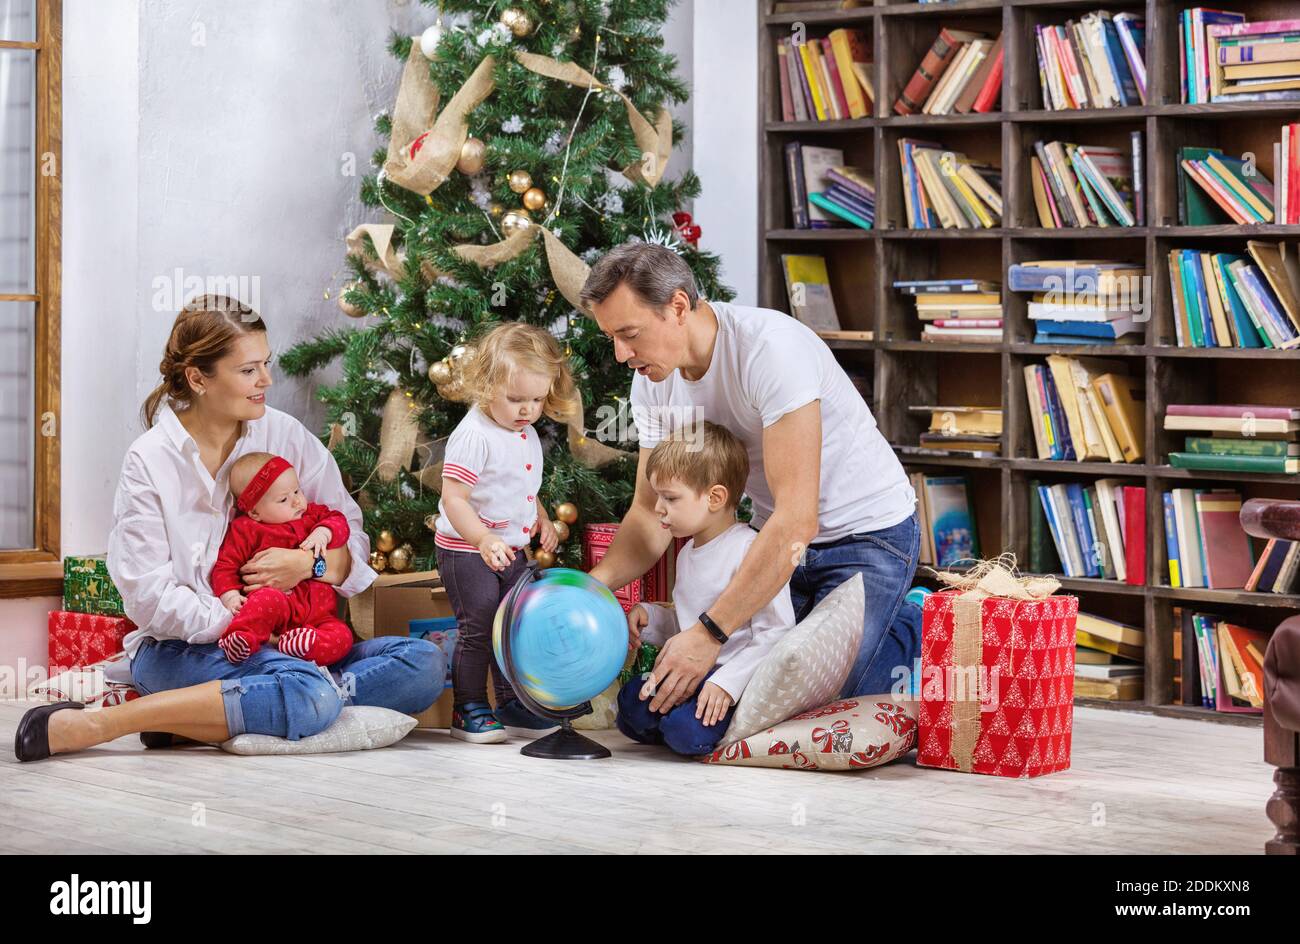 Familie mit drei Kindern neben Weihnachtsbaum zu Hause. Kinder und Vater untersucht Globus, Mutter hält Baby Tochter. Stockfoto